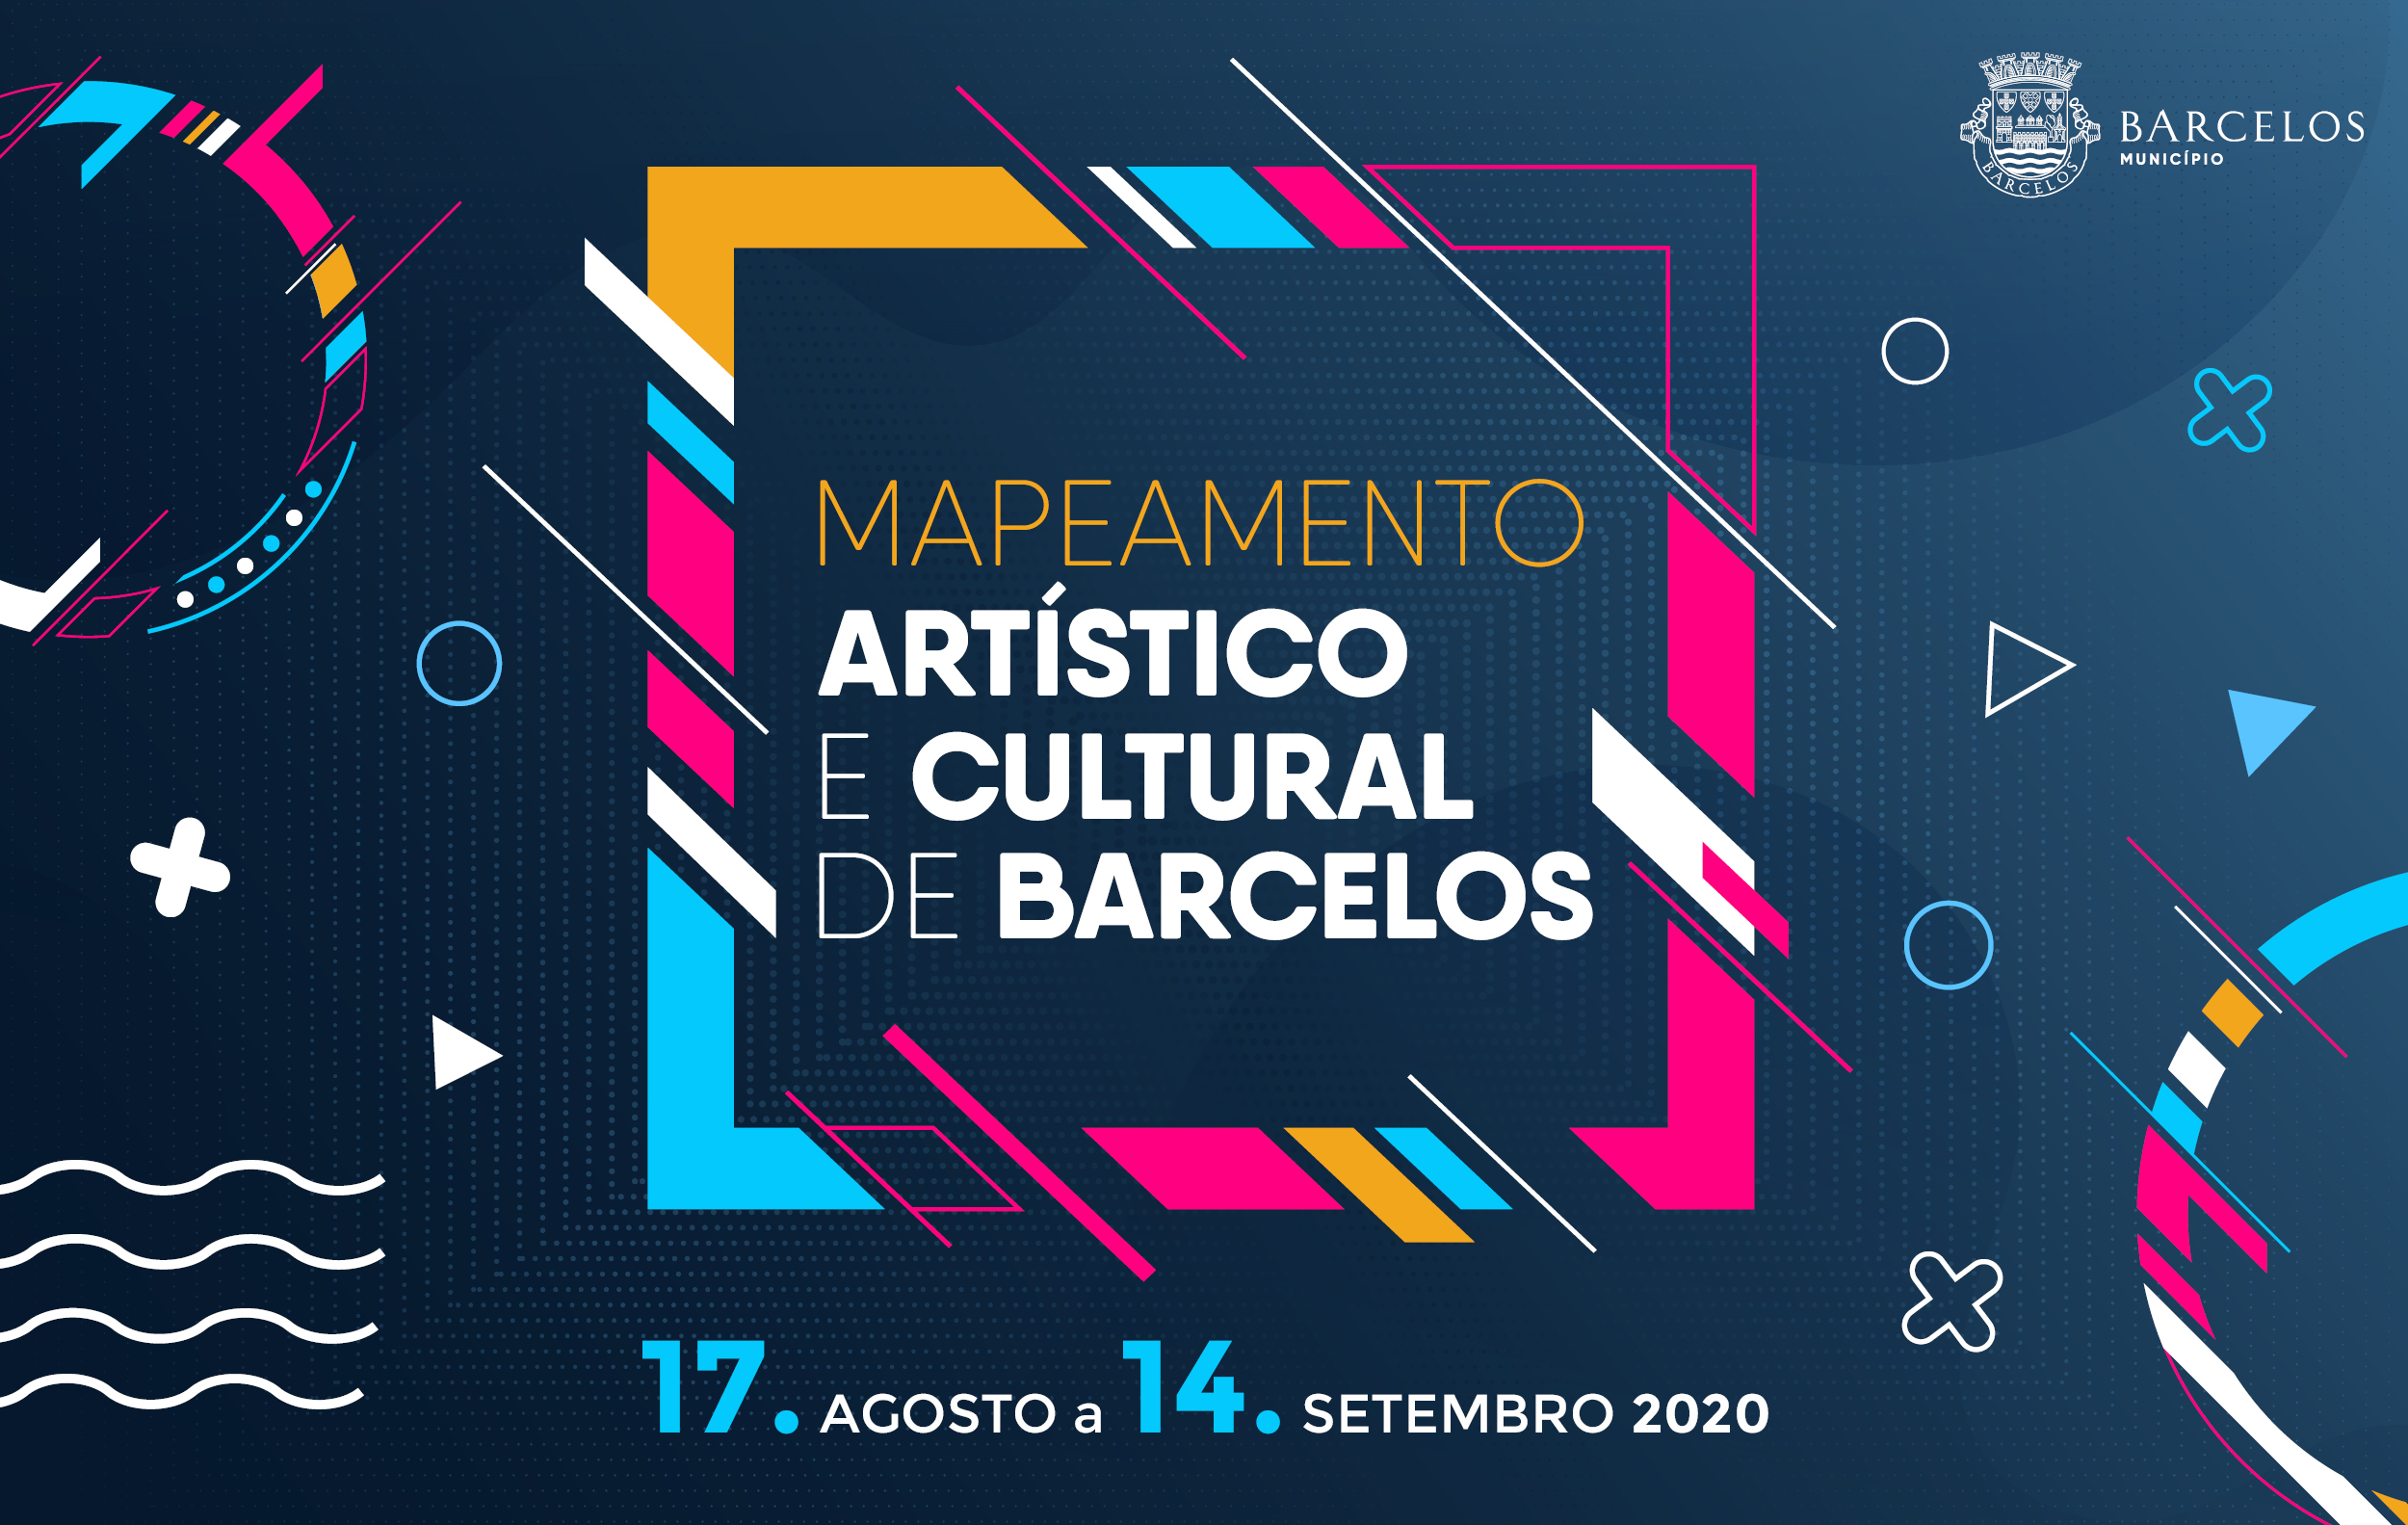 Plataforma digital MACB – Mapeamento Artístico e Cultural de Barcelos disponível a 17 agosto no site do Município